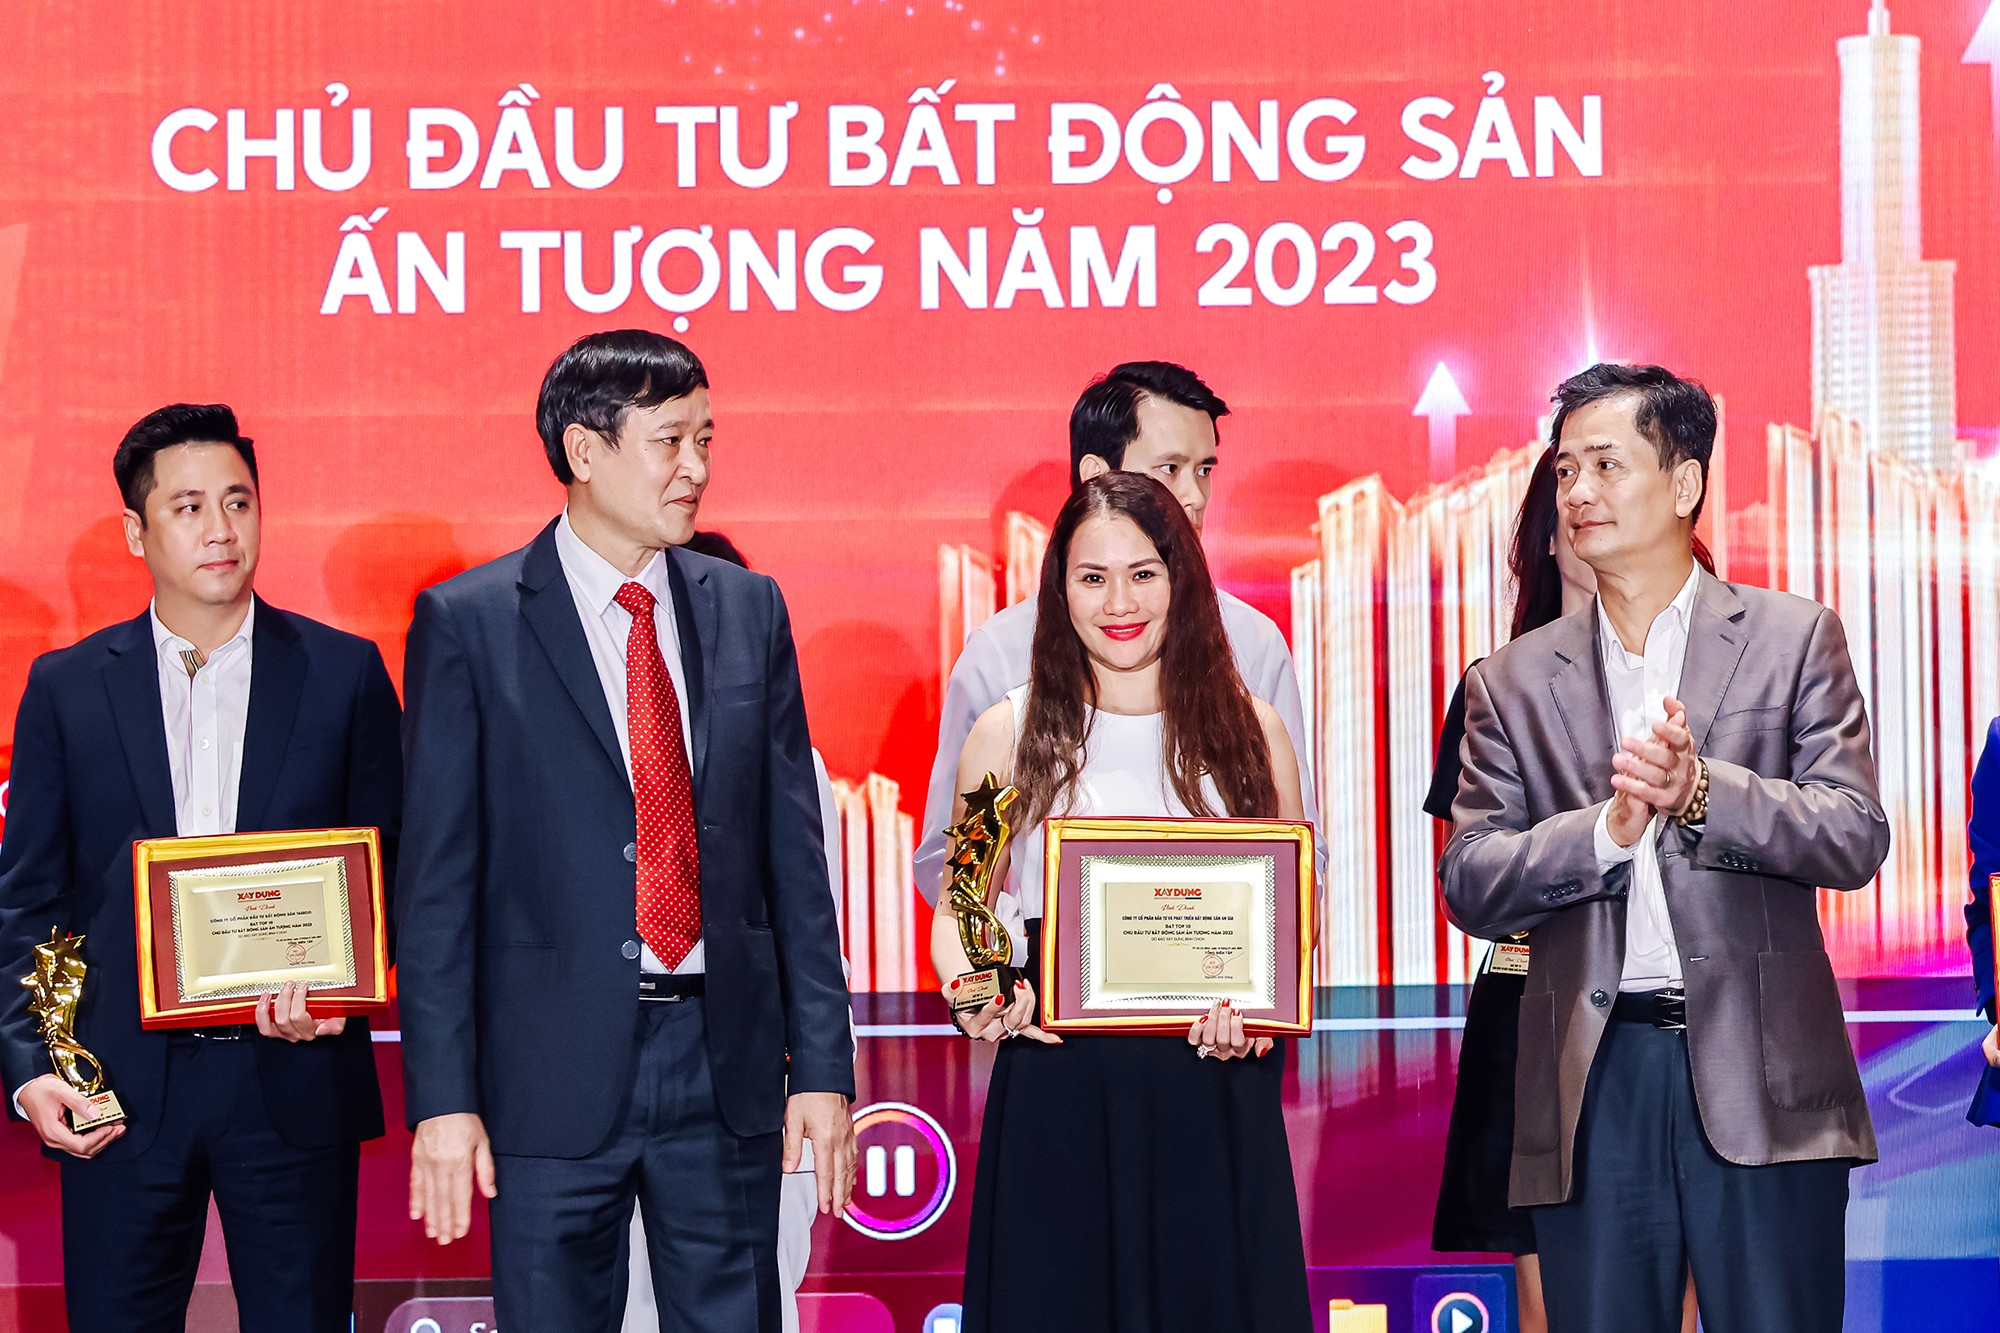 Đại diện An Gia nhận giải thưởng Top 10 Chủ Đầu tư BĐS ấn tượng 2023